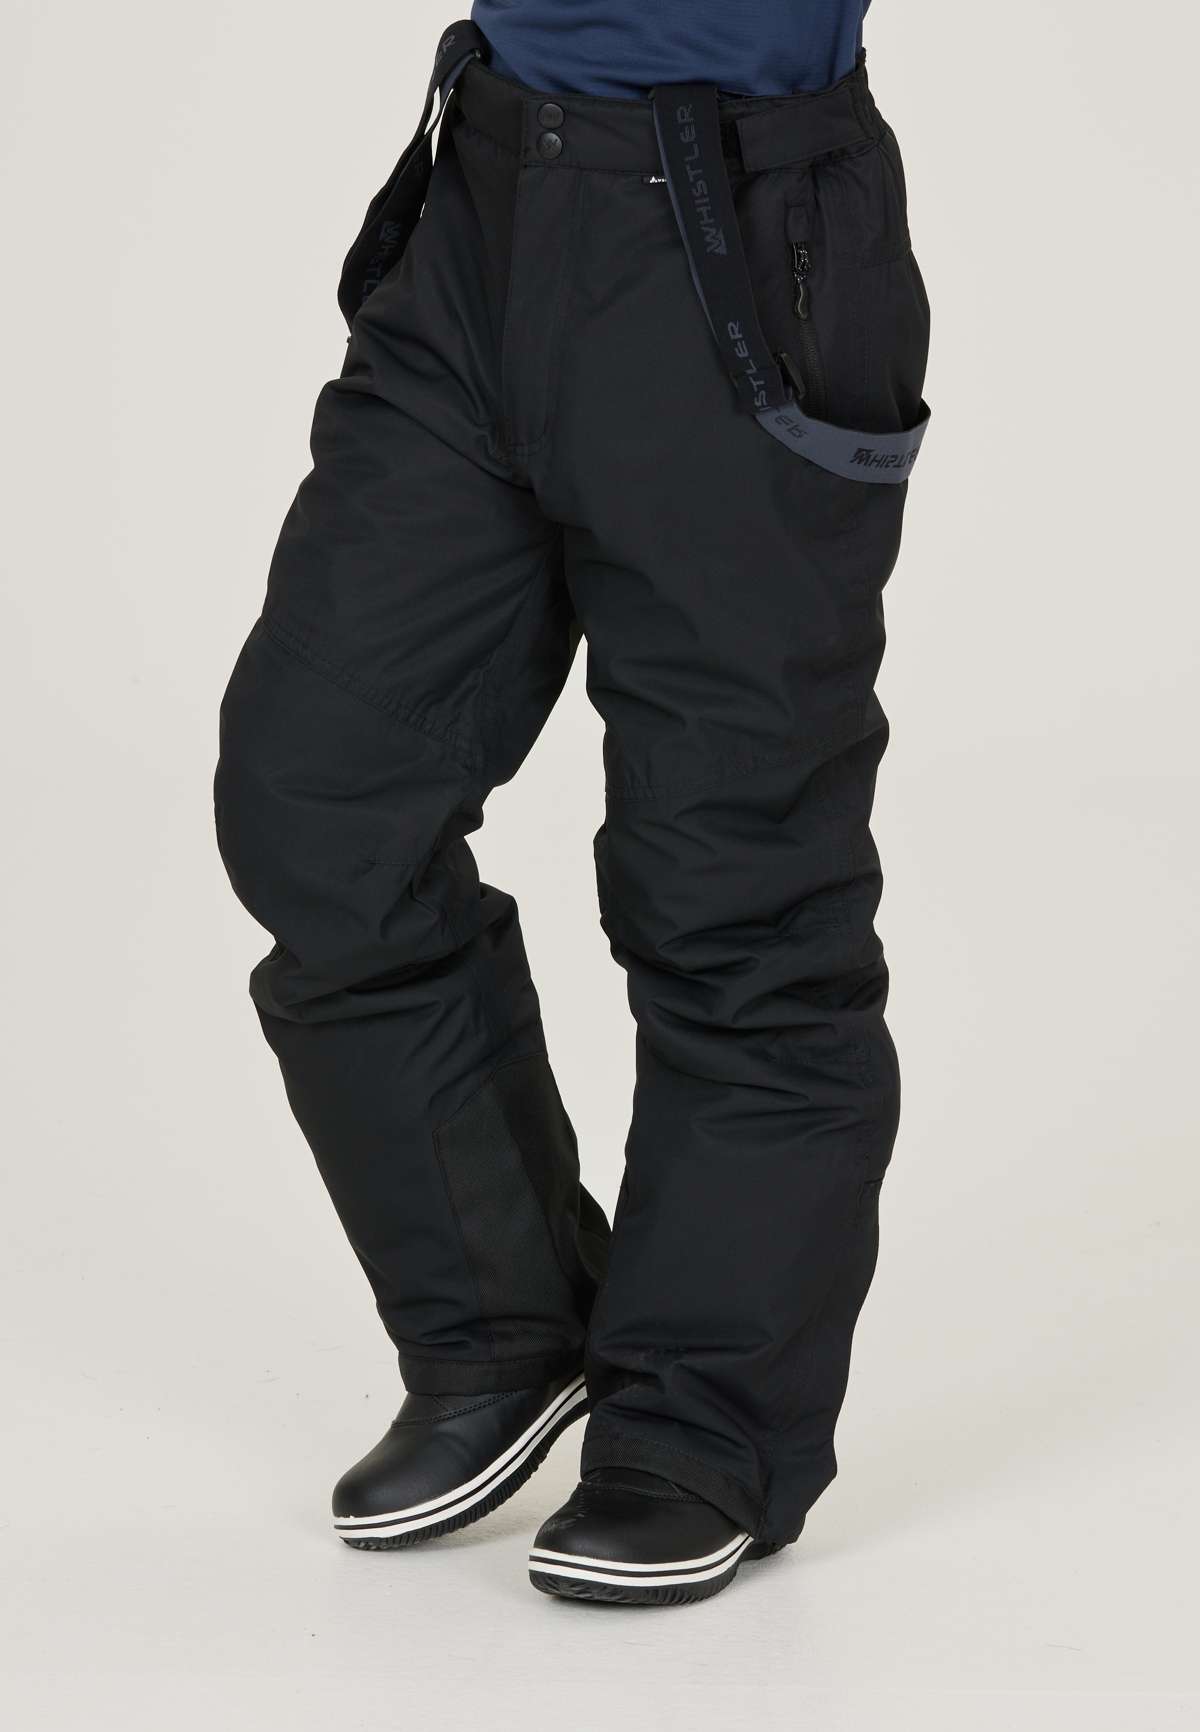 Лыжные брюки с ветрозащитной и водонепроницаемой функциональной мембраной.